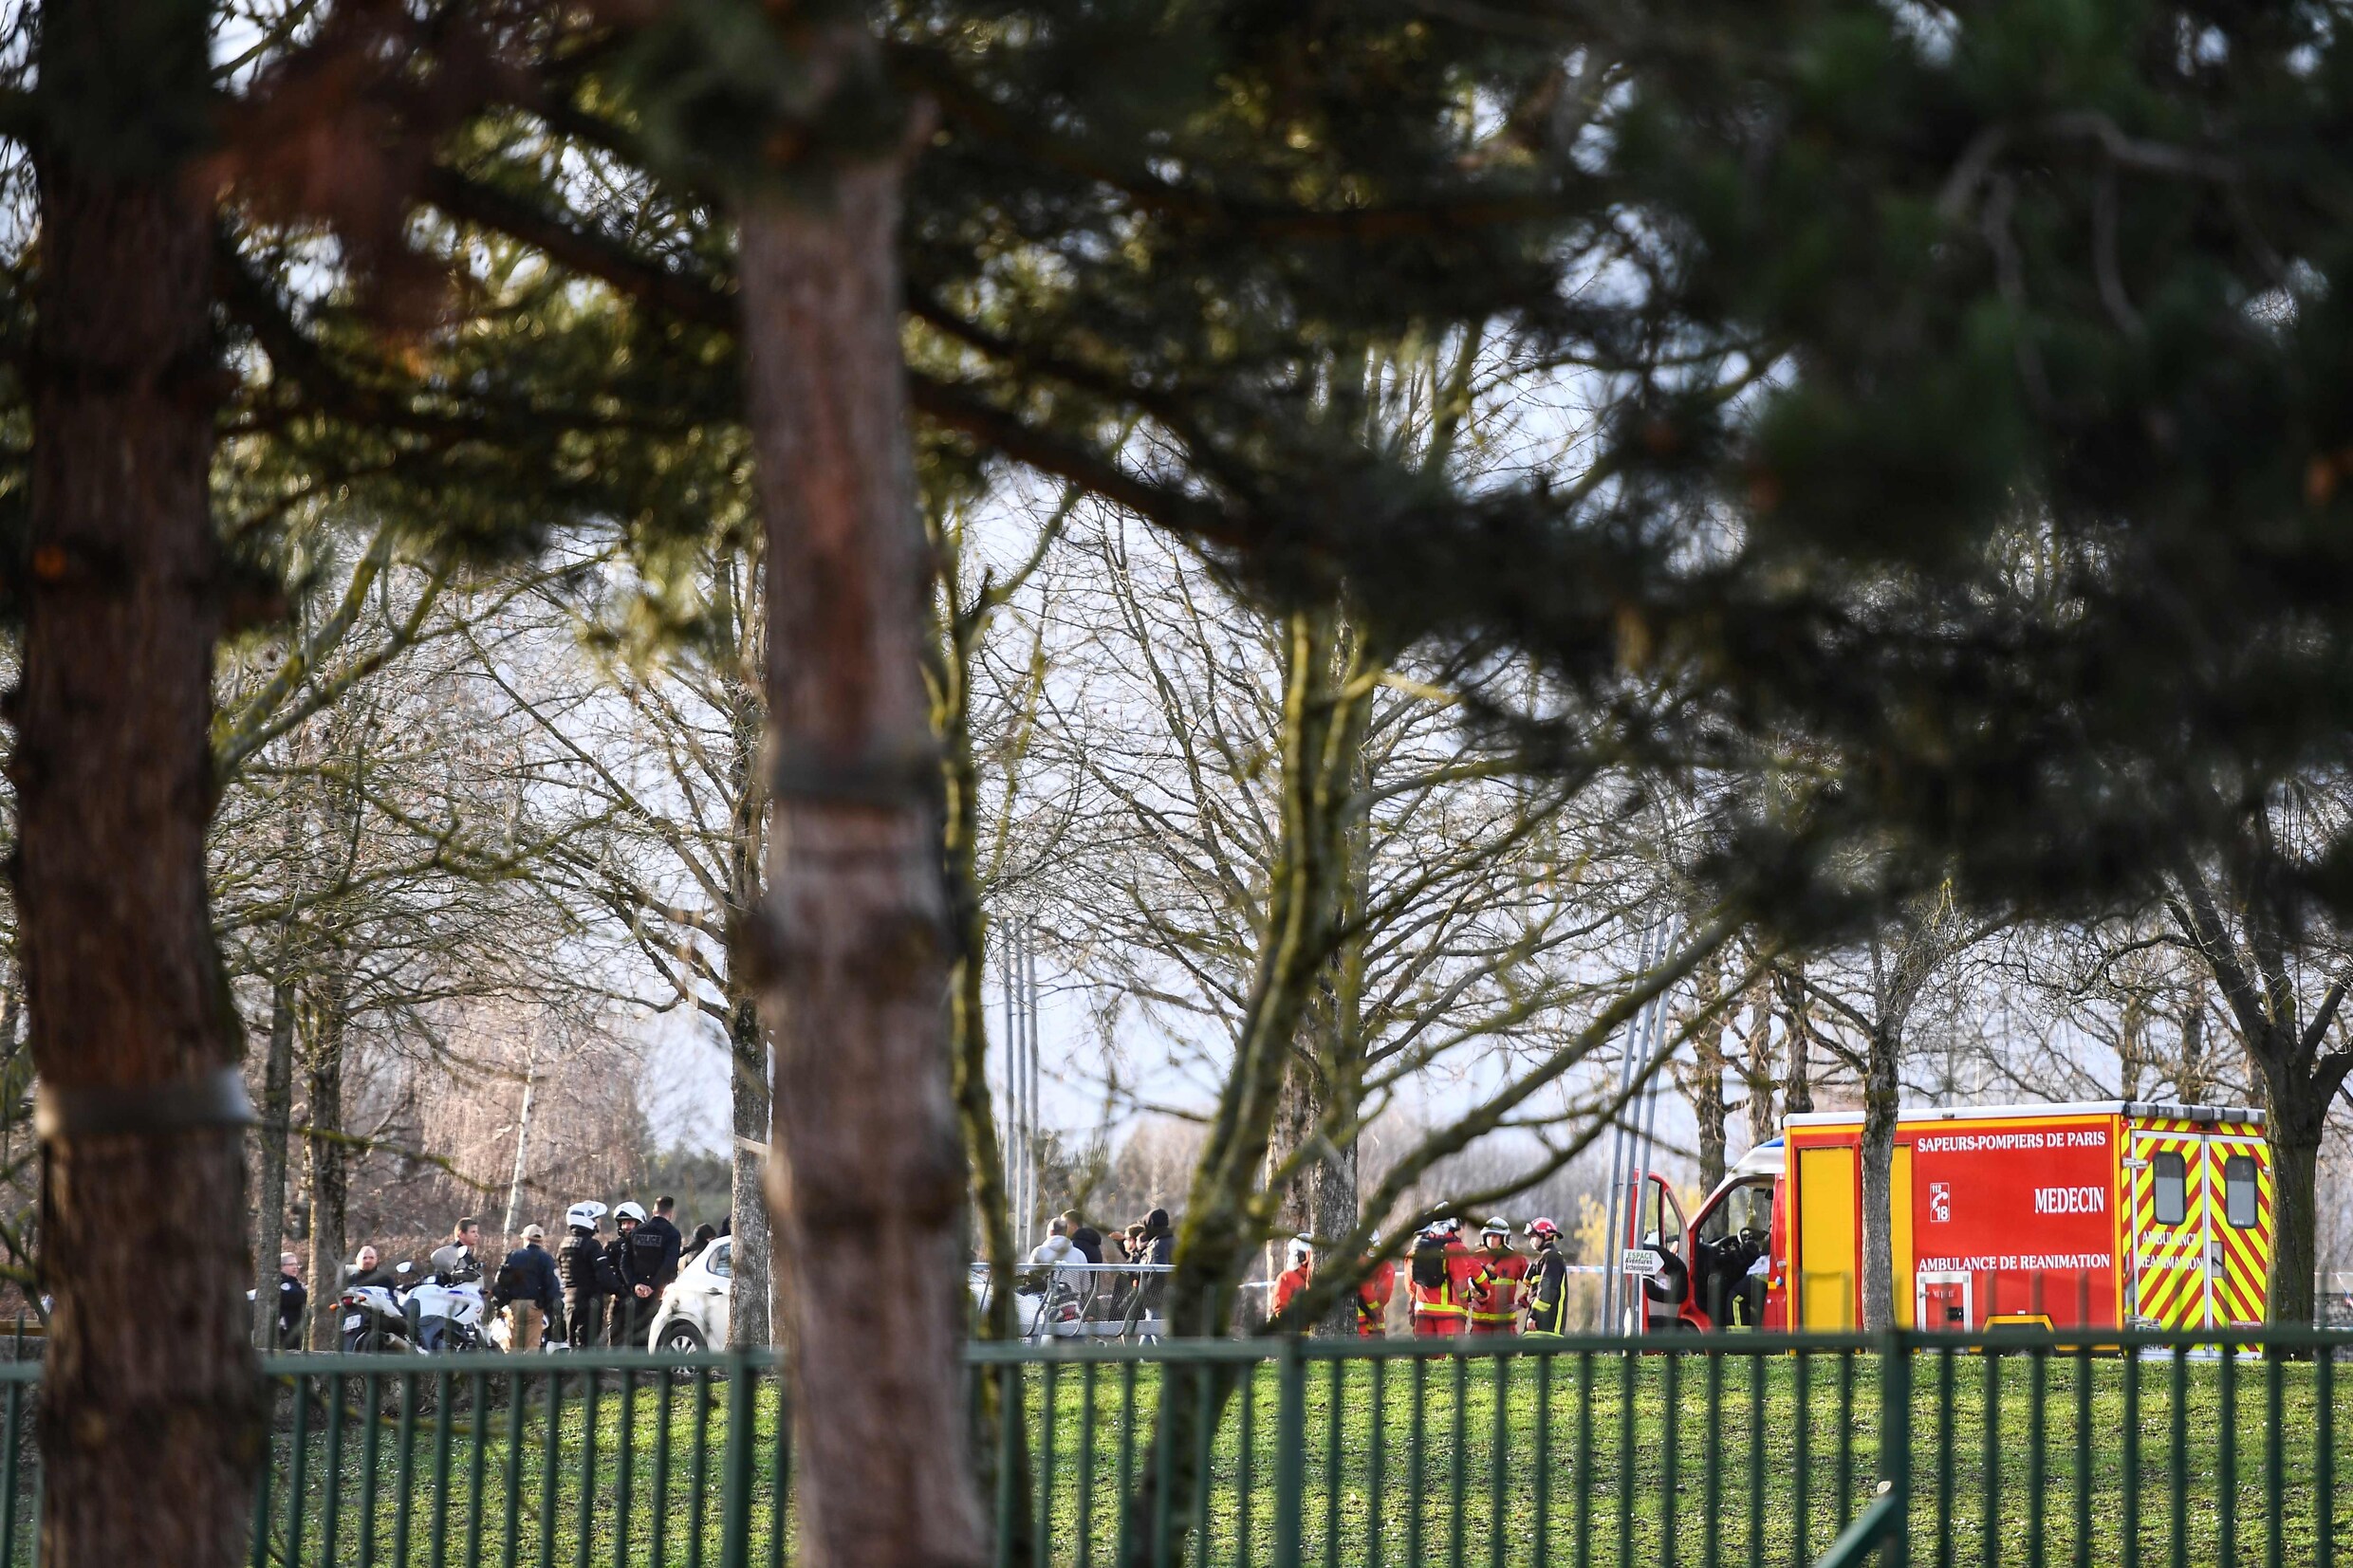 Dode en twee gewonden na mesaanval in Parijs, politie schiet dader dood